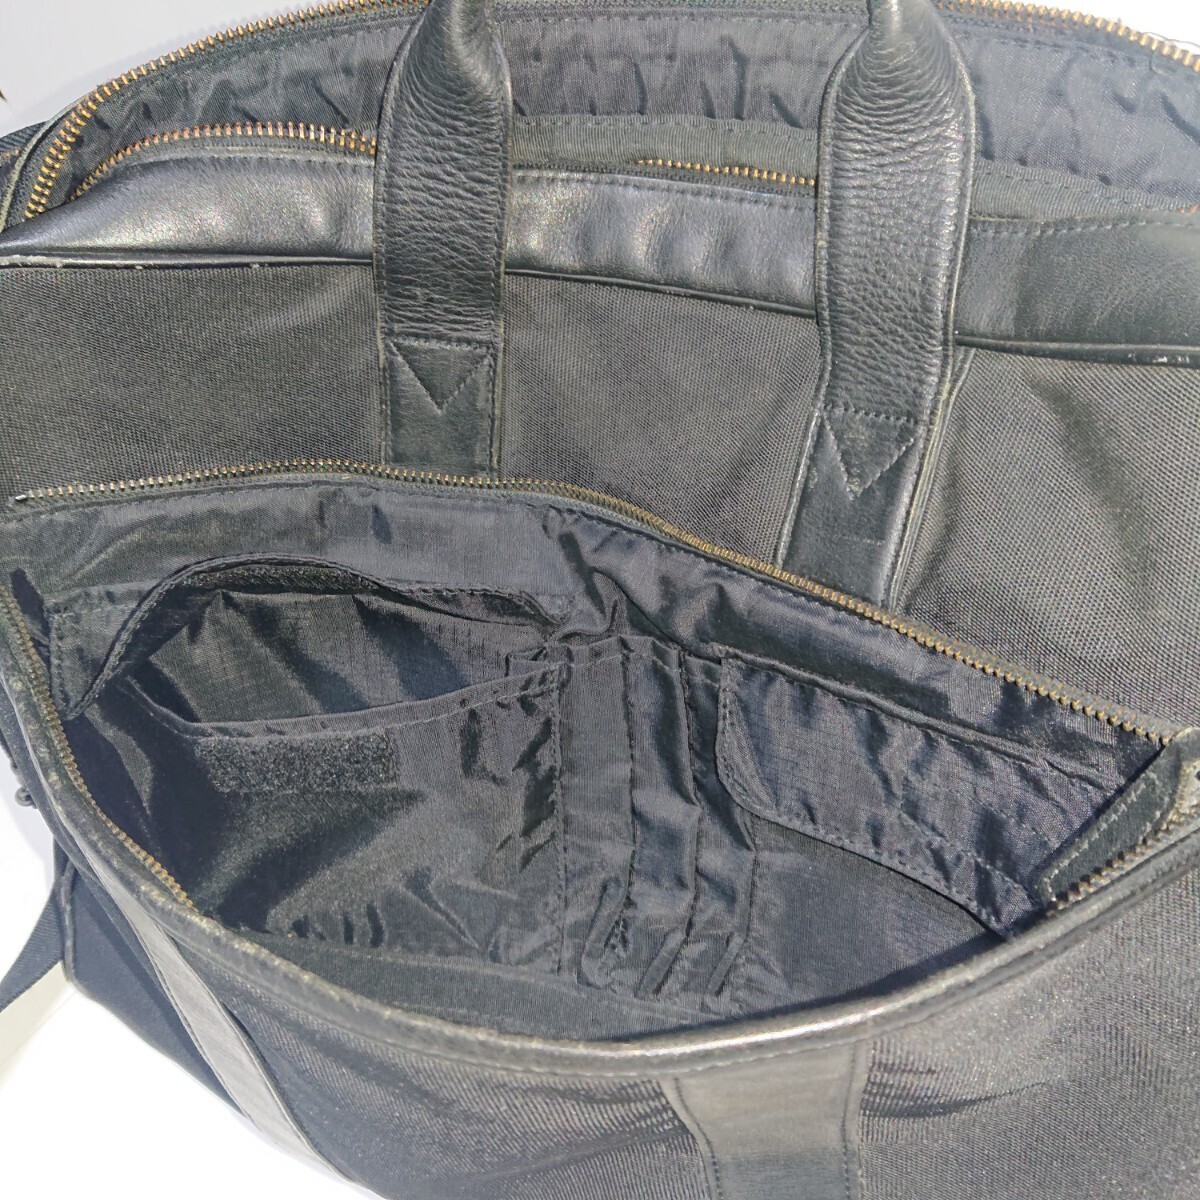 PORTER Porter б/у Yoshida bag сумка на плечо портфель портфель черный чёрный кожа 2way мужской 2 слой тип 